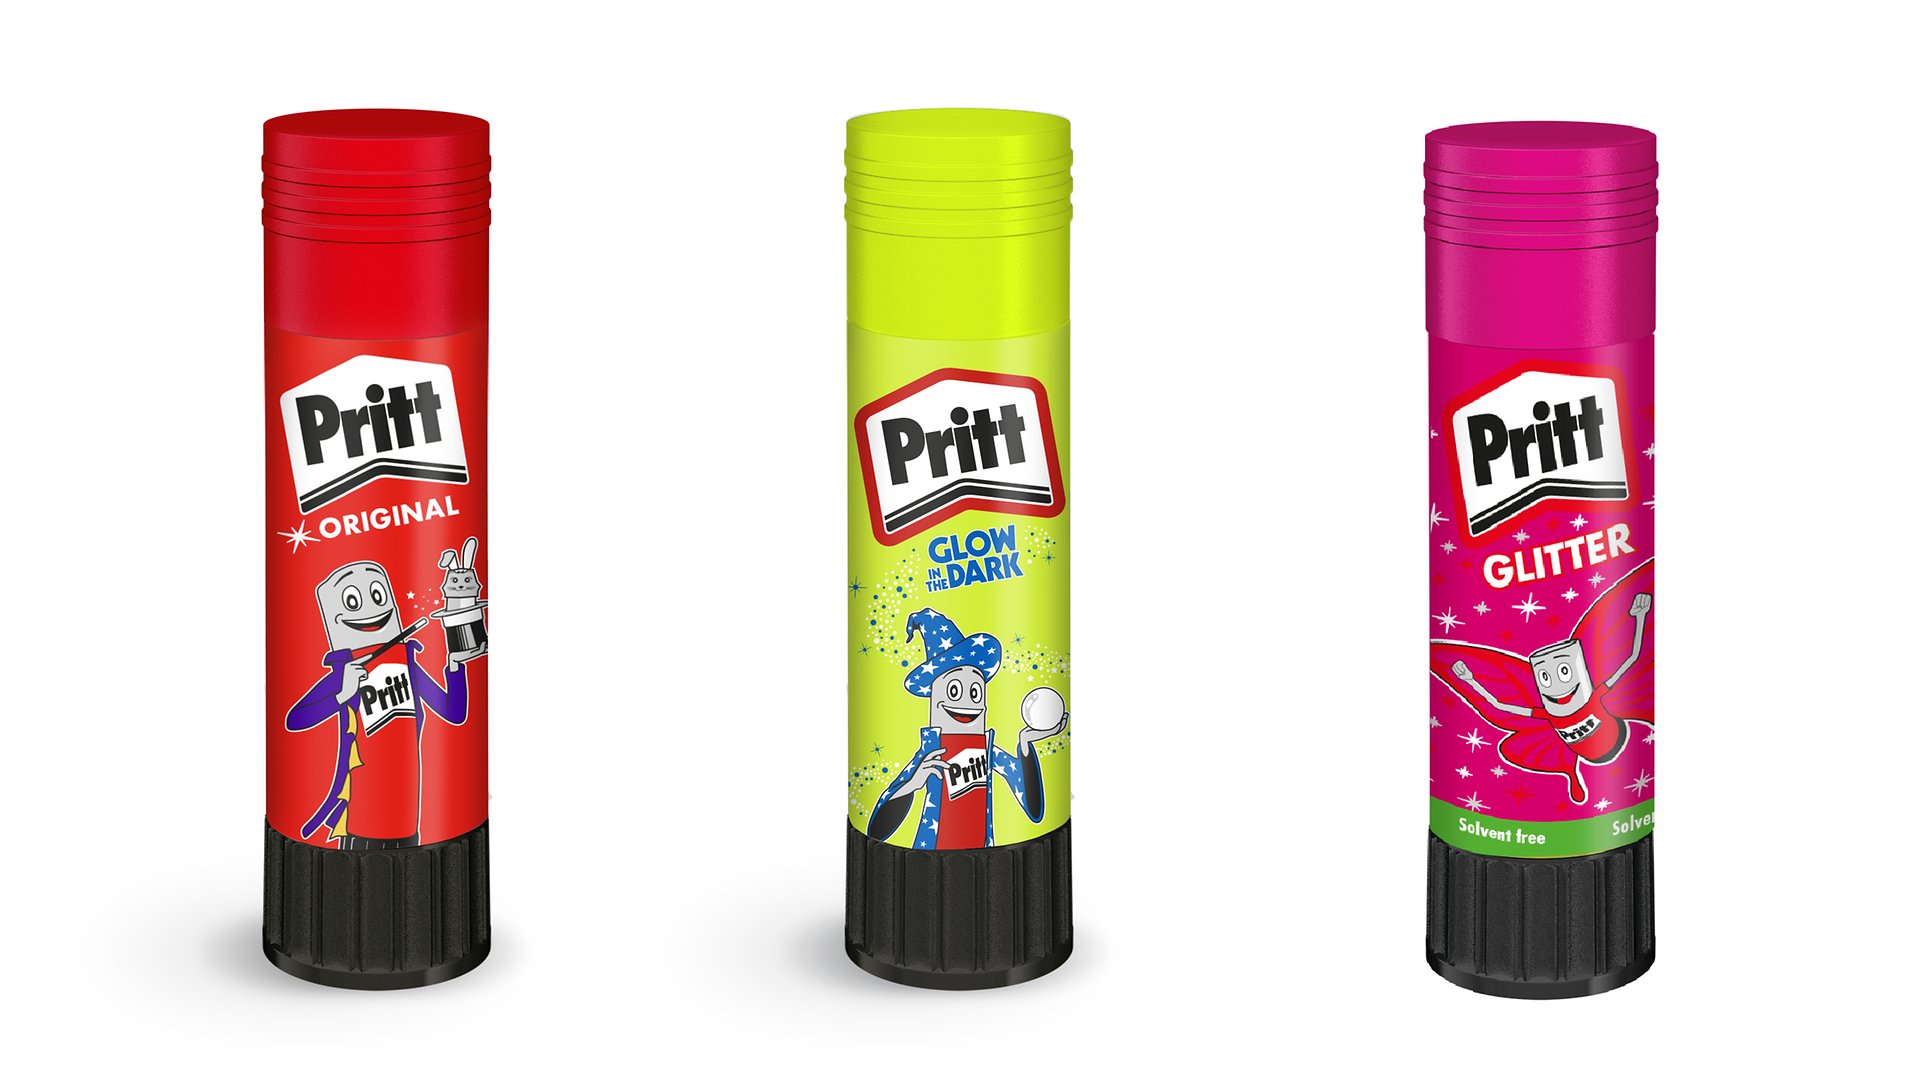 Mr. Pritt as magician, the Pritt “Glow in the Dark” glue stick, and the Pritt glitter glue stick for children.